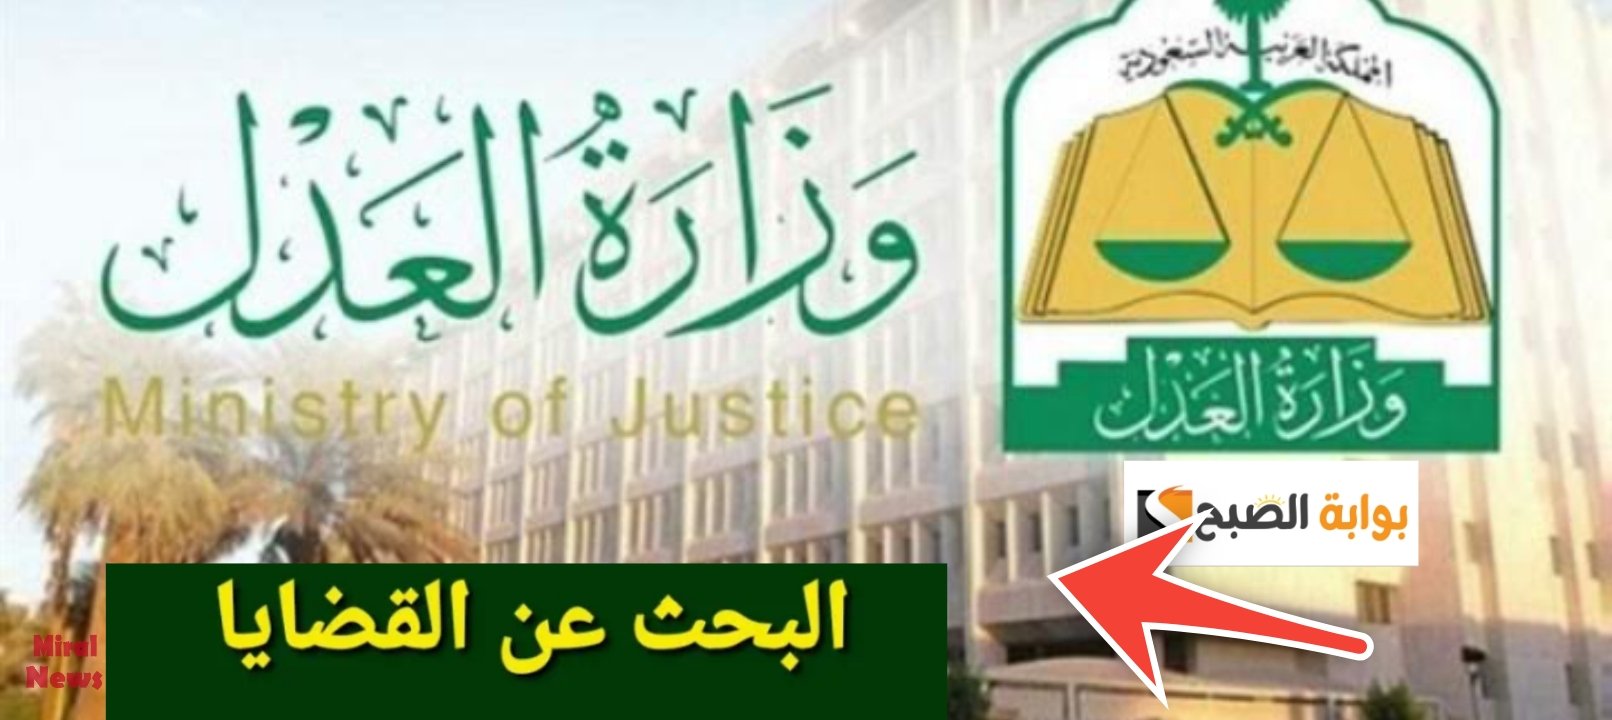 الاستعلام عن قضية برقم الهوية وزارة العدل السعودية في 5 خطوات إلكترونيا